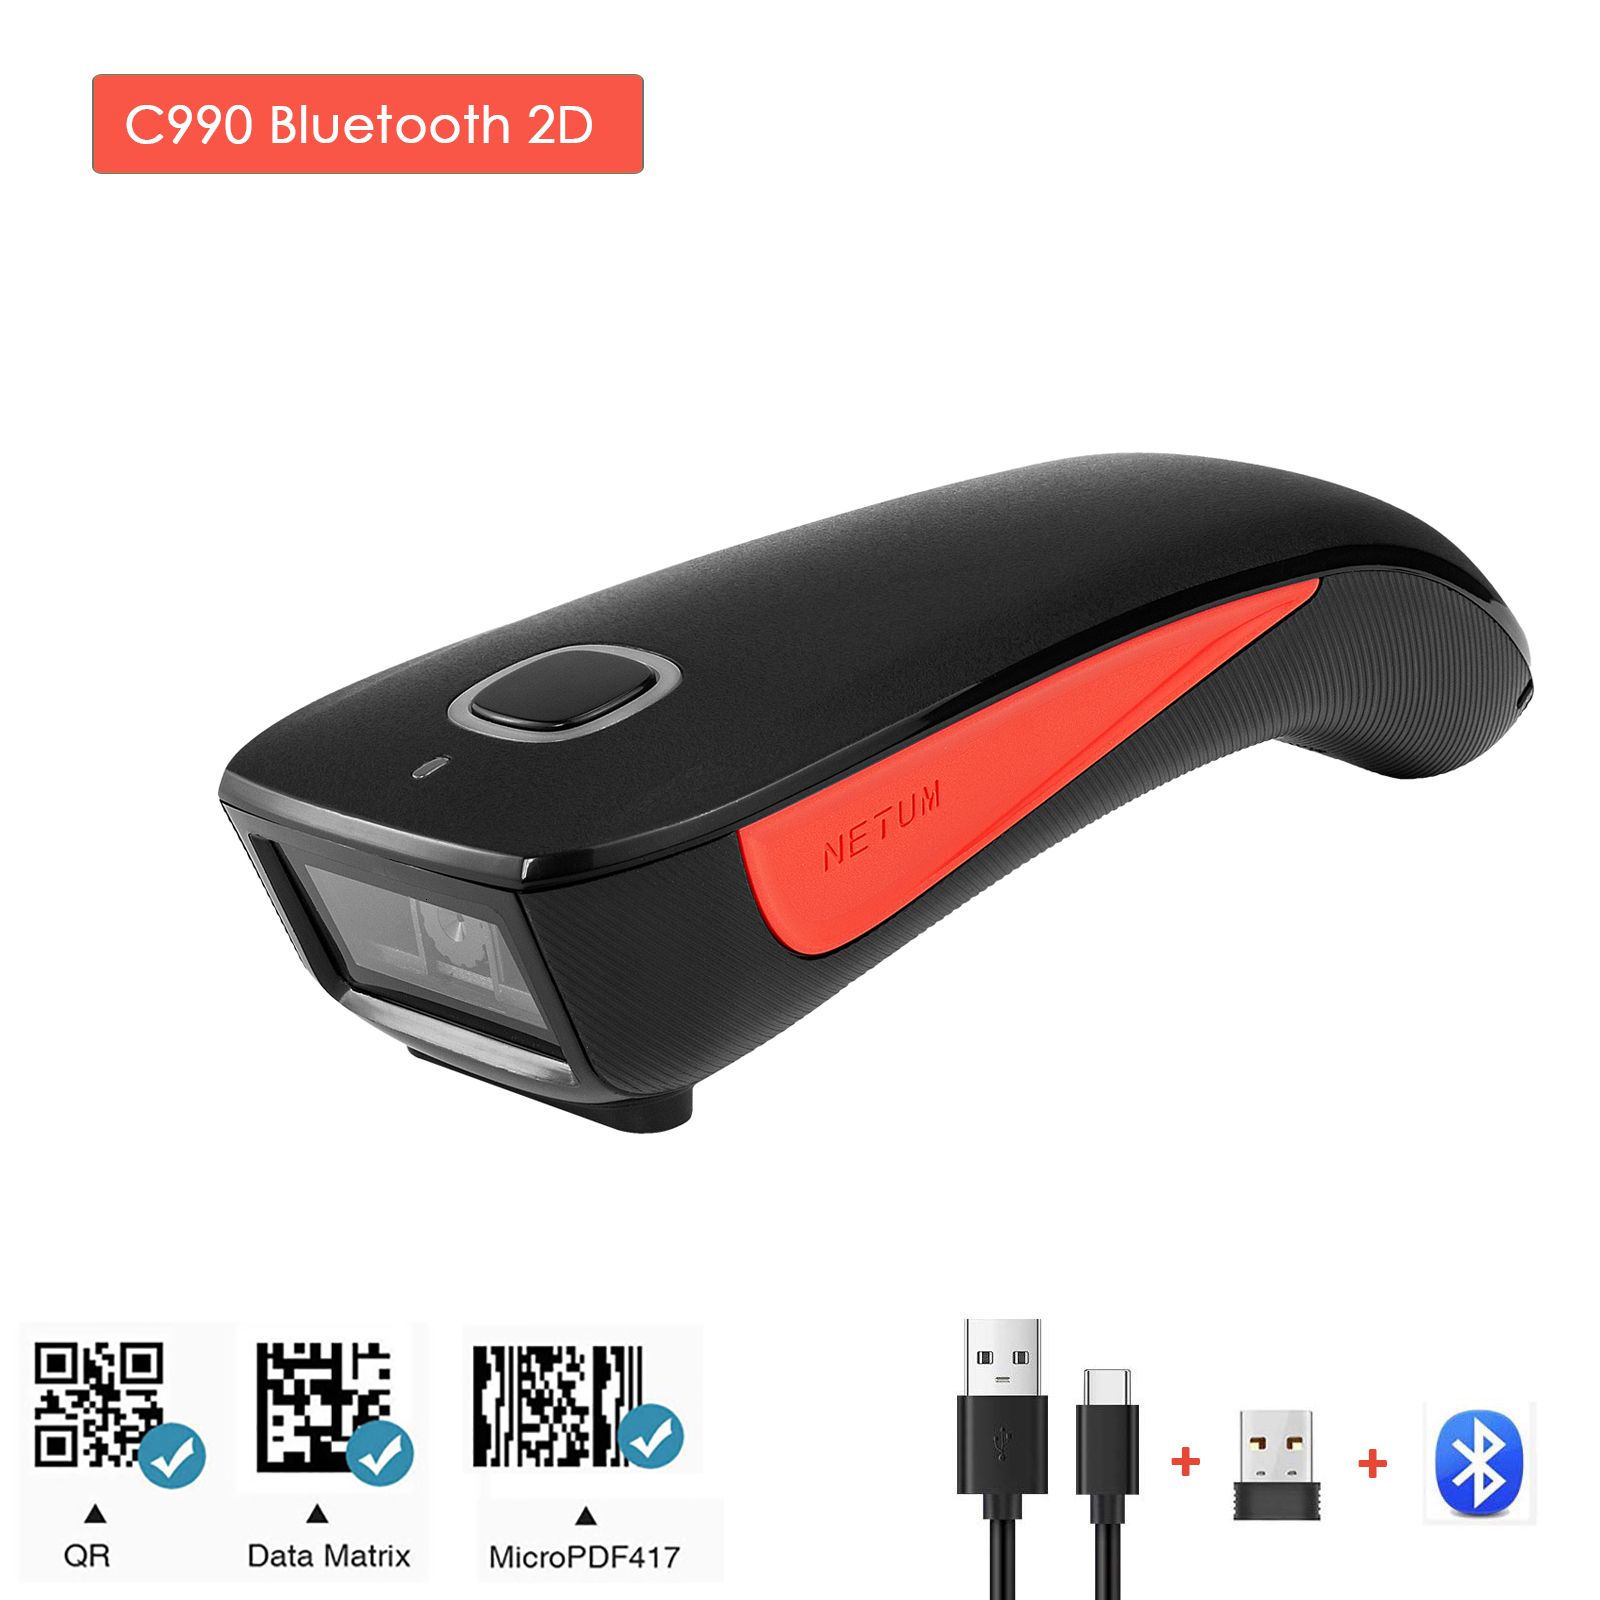 C990 Bluetooth 2d